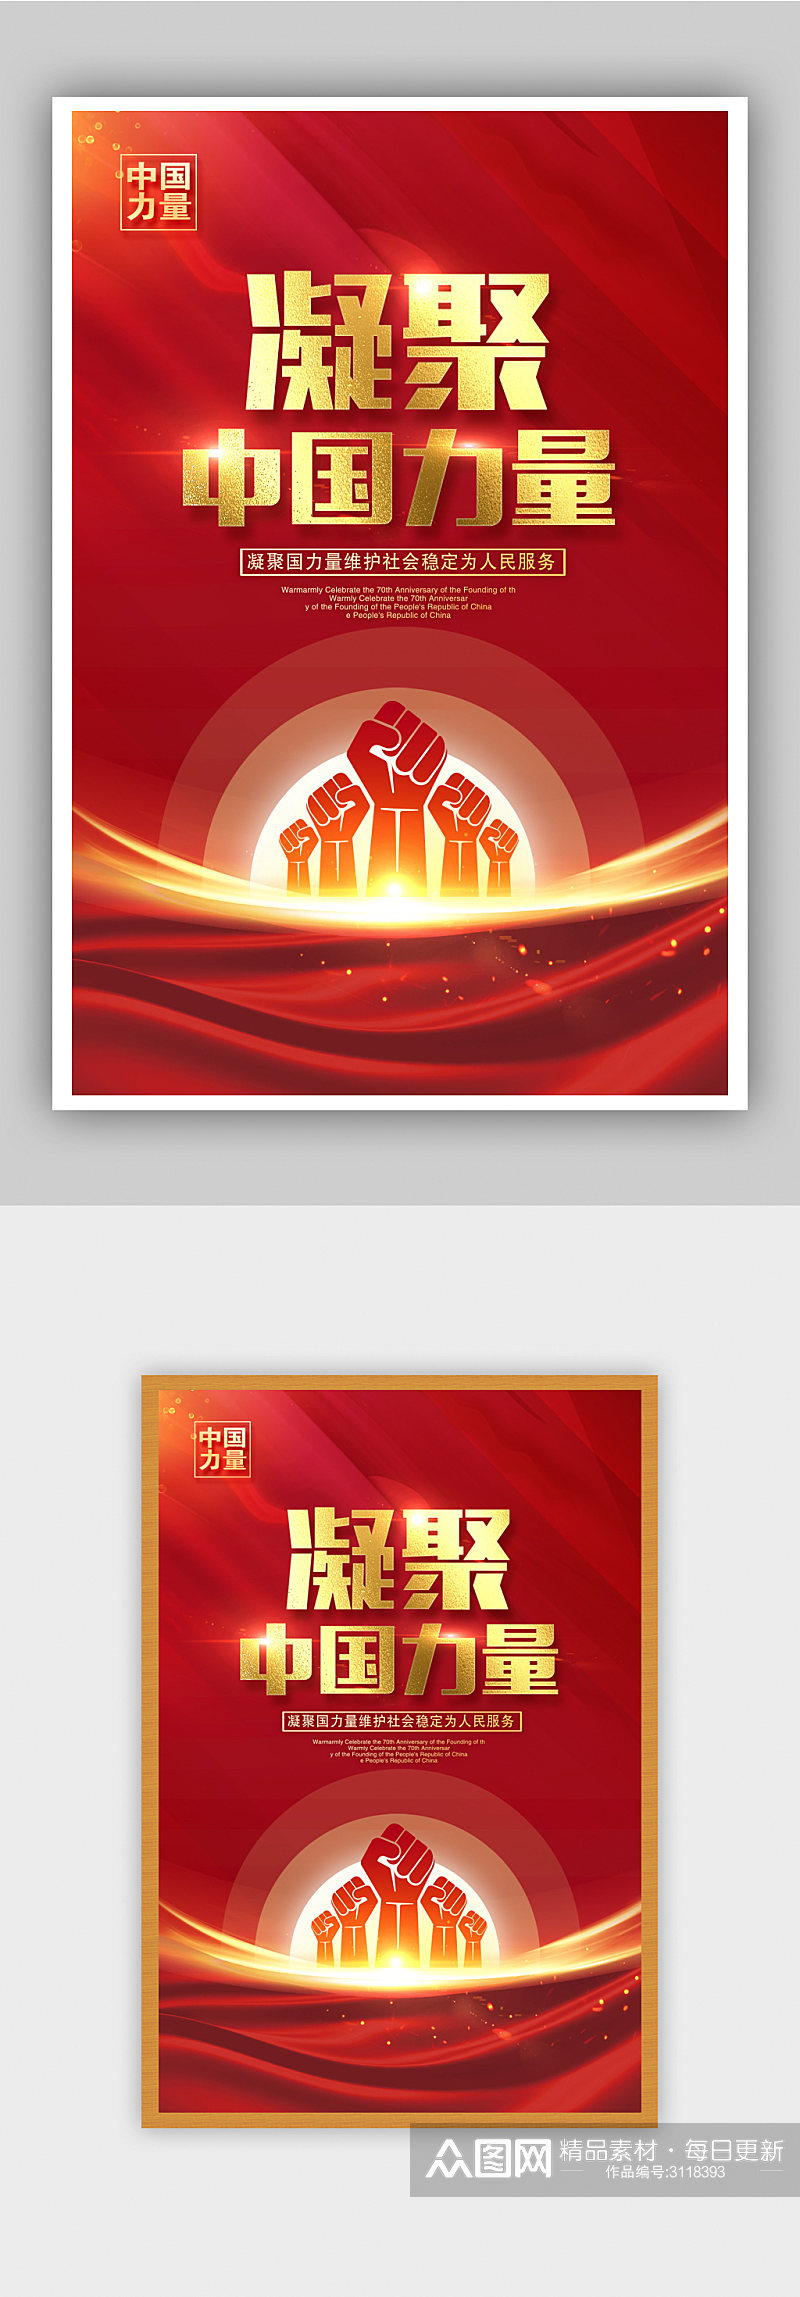 红色大气凝聚中国力量海报设计素材